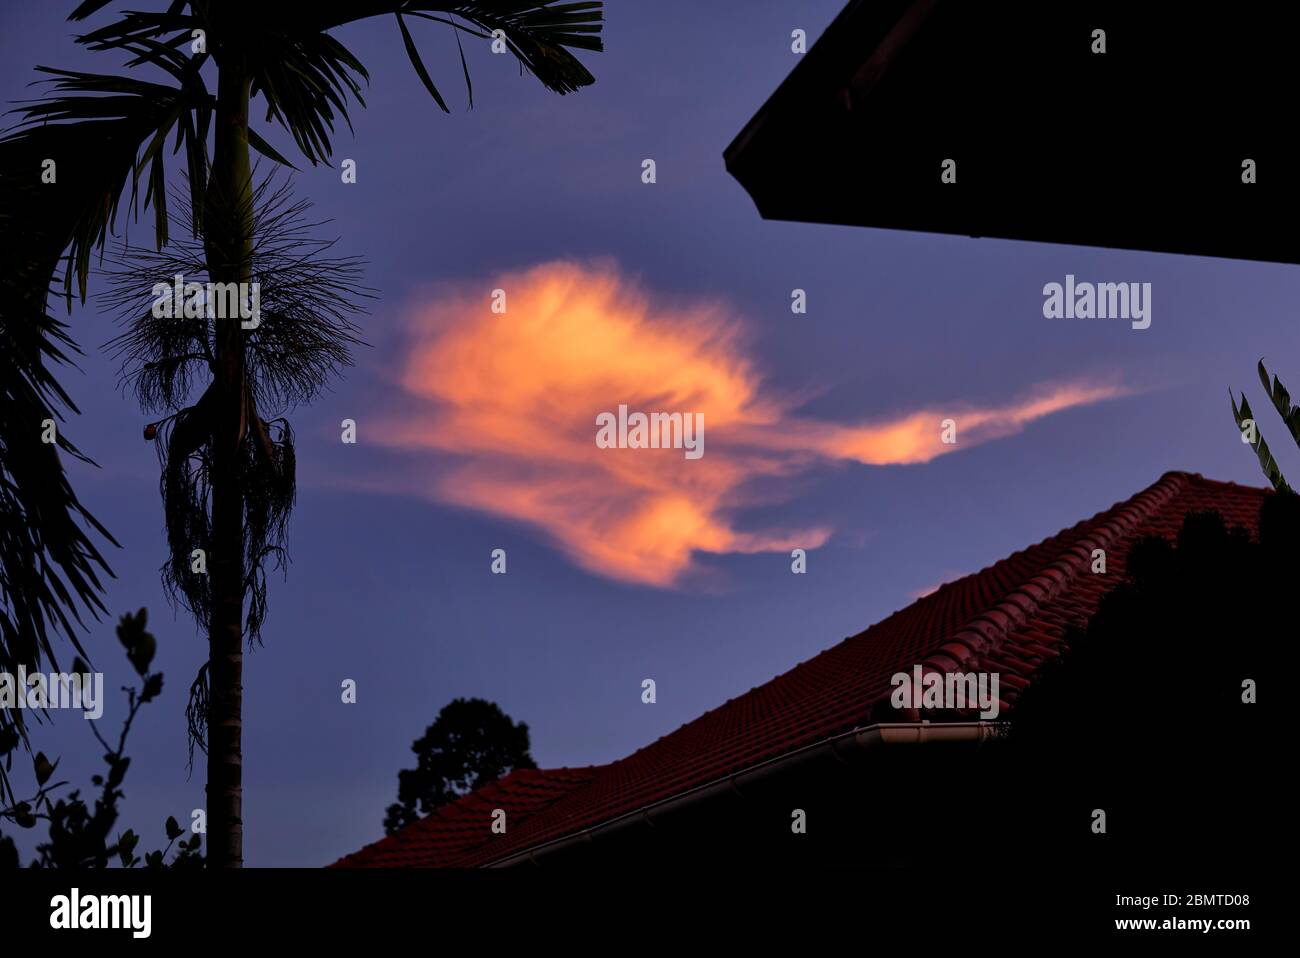 Dramatischer Himmel in der Nacht mit der untergehenden Sonne, die einen dramatischen orangefarbenen feurigen Wolkeneffekt erzeugt Stockfoto